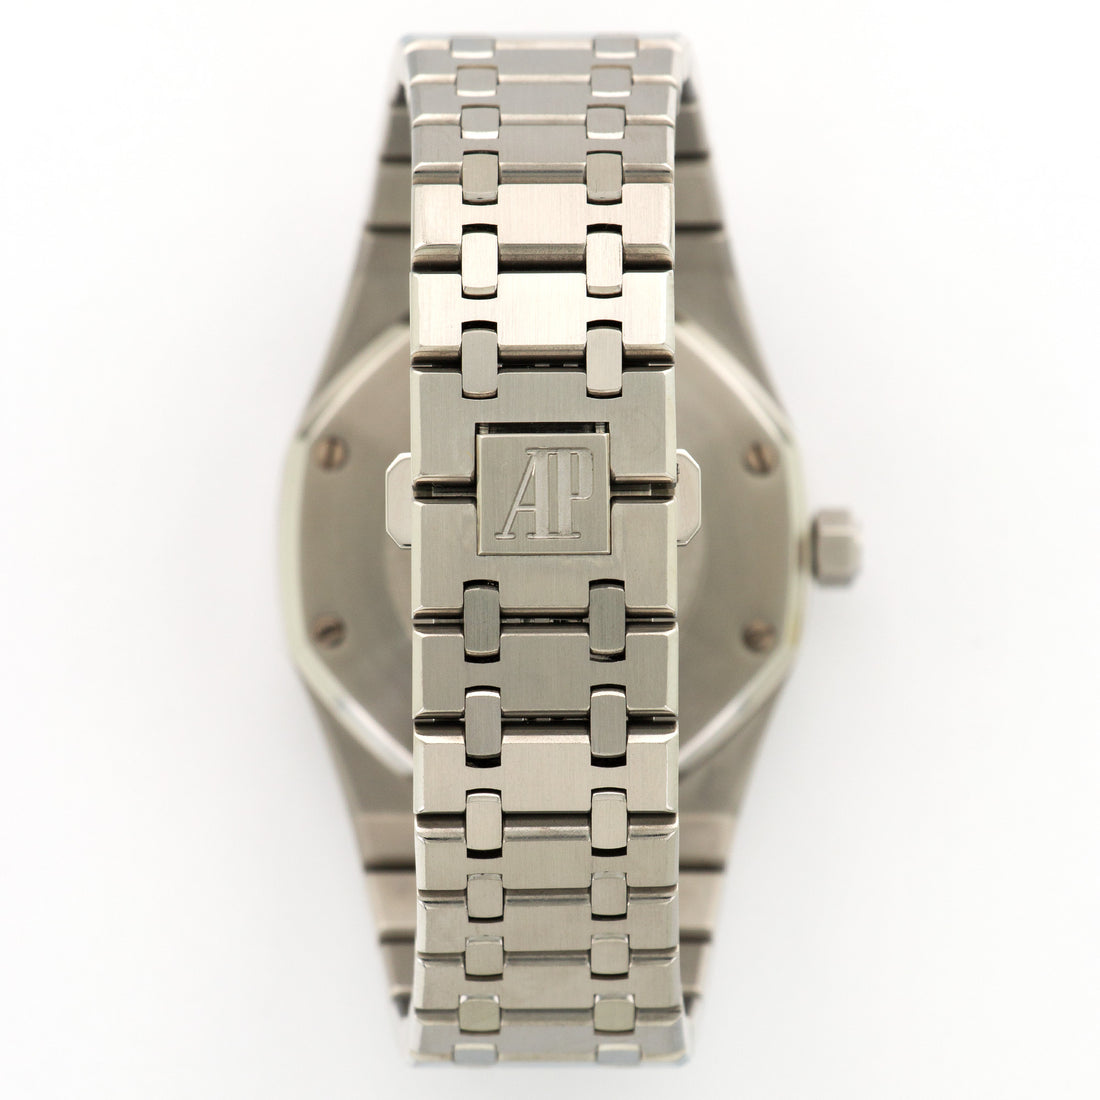 Audemars Piguet Royal Oak Dual Time Watch Ref. 26120